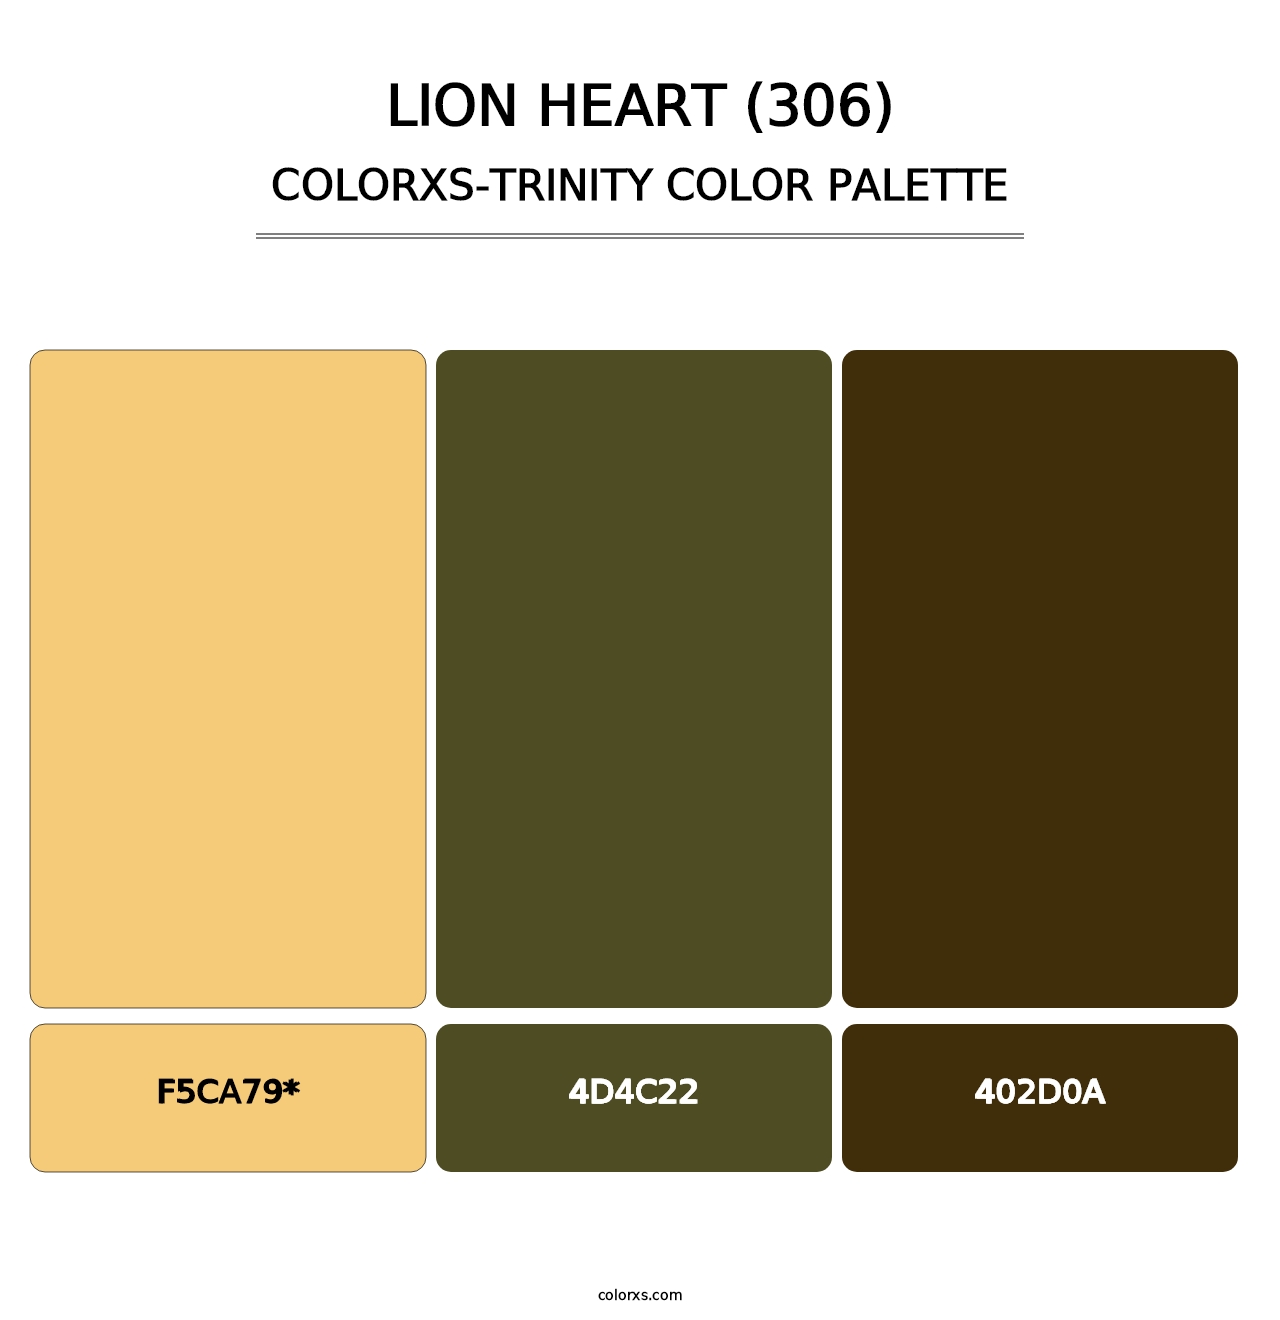 Lion Heart (306) - Colorxs Trinity Palette